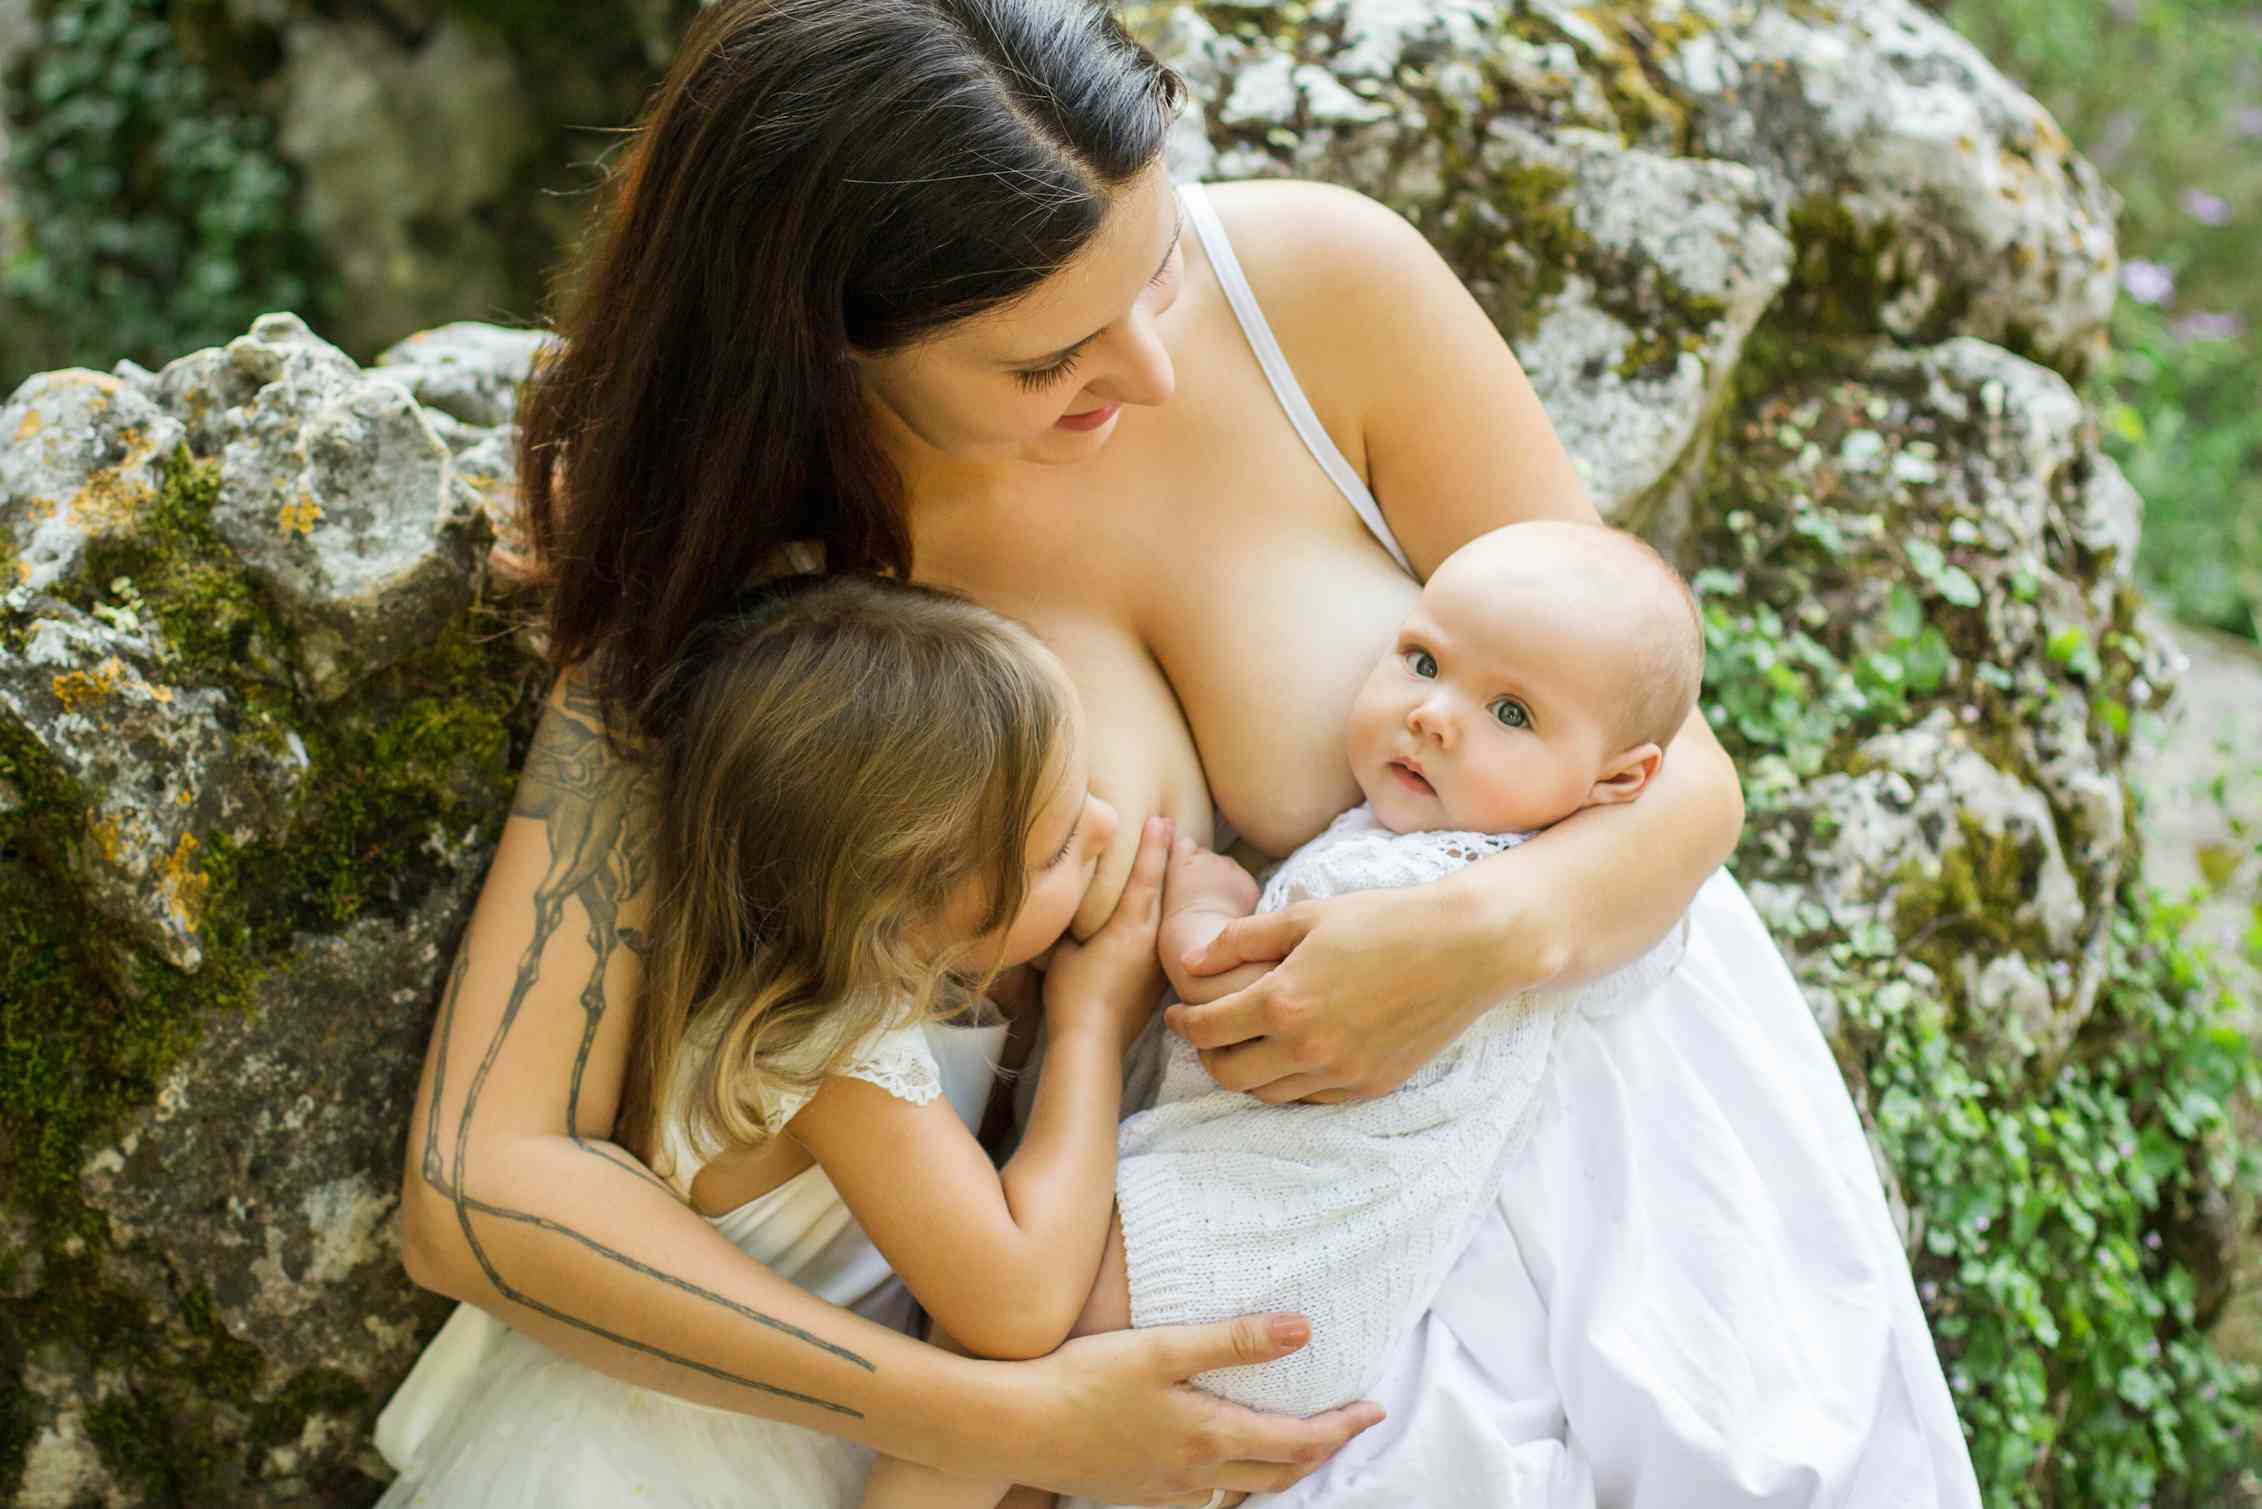 Бесплатное видео красивых мамочек. Парамеева Breastfeeding. Женщина с ребенком. Кормление грудью. Тандемное вскармливание.